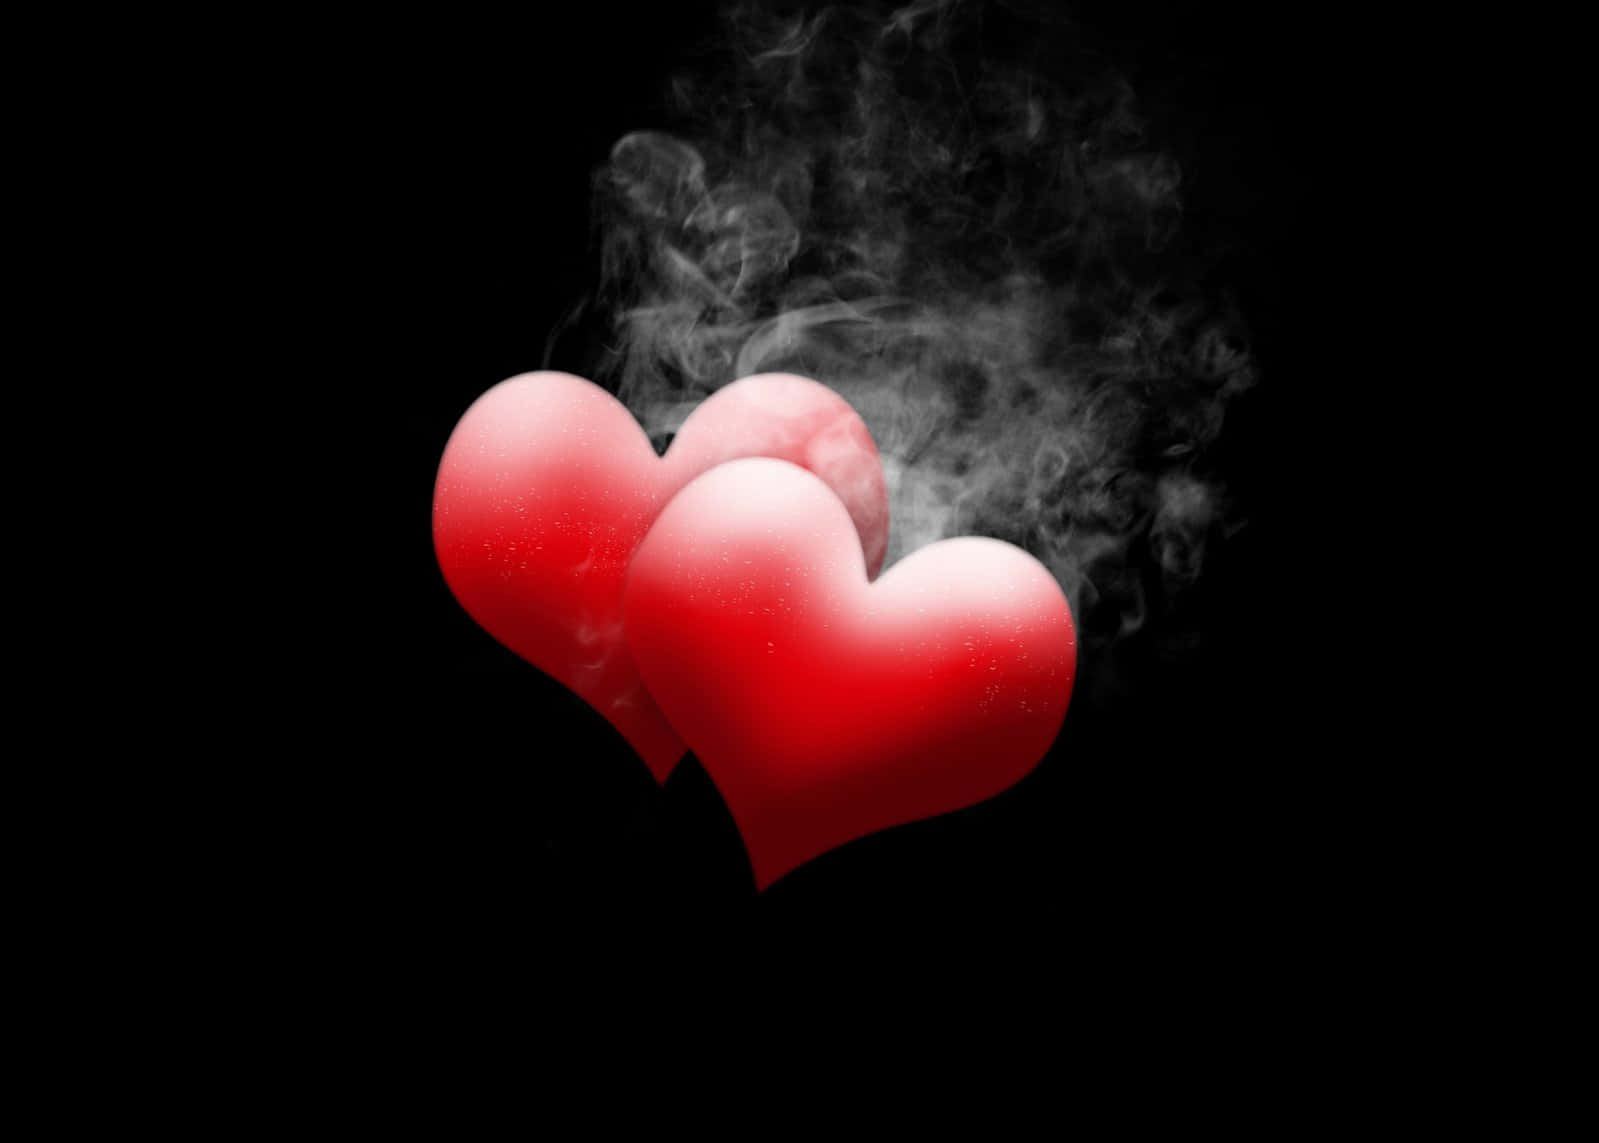 Rauchendesentzückendes Herz-bild